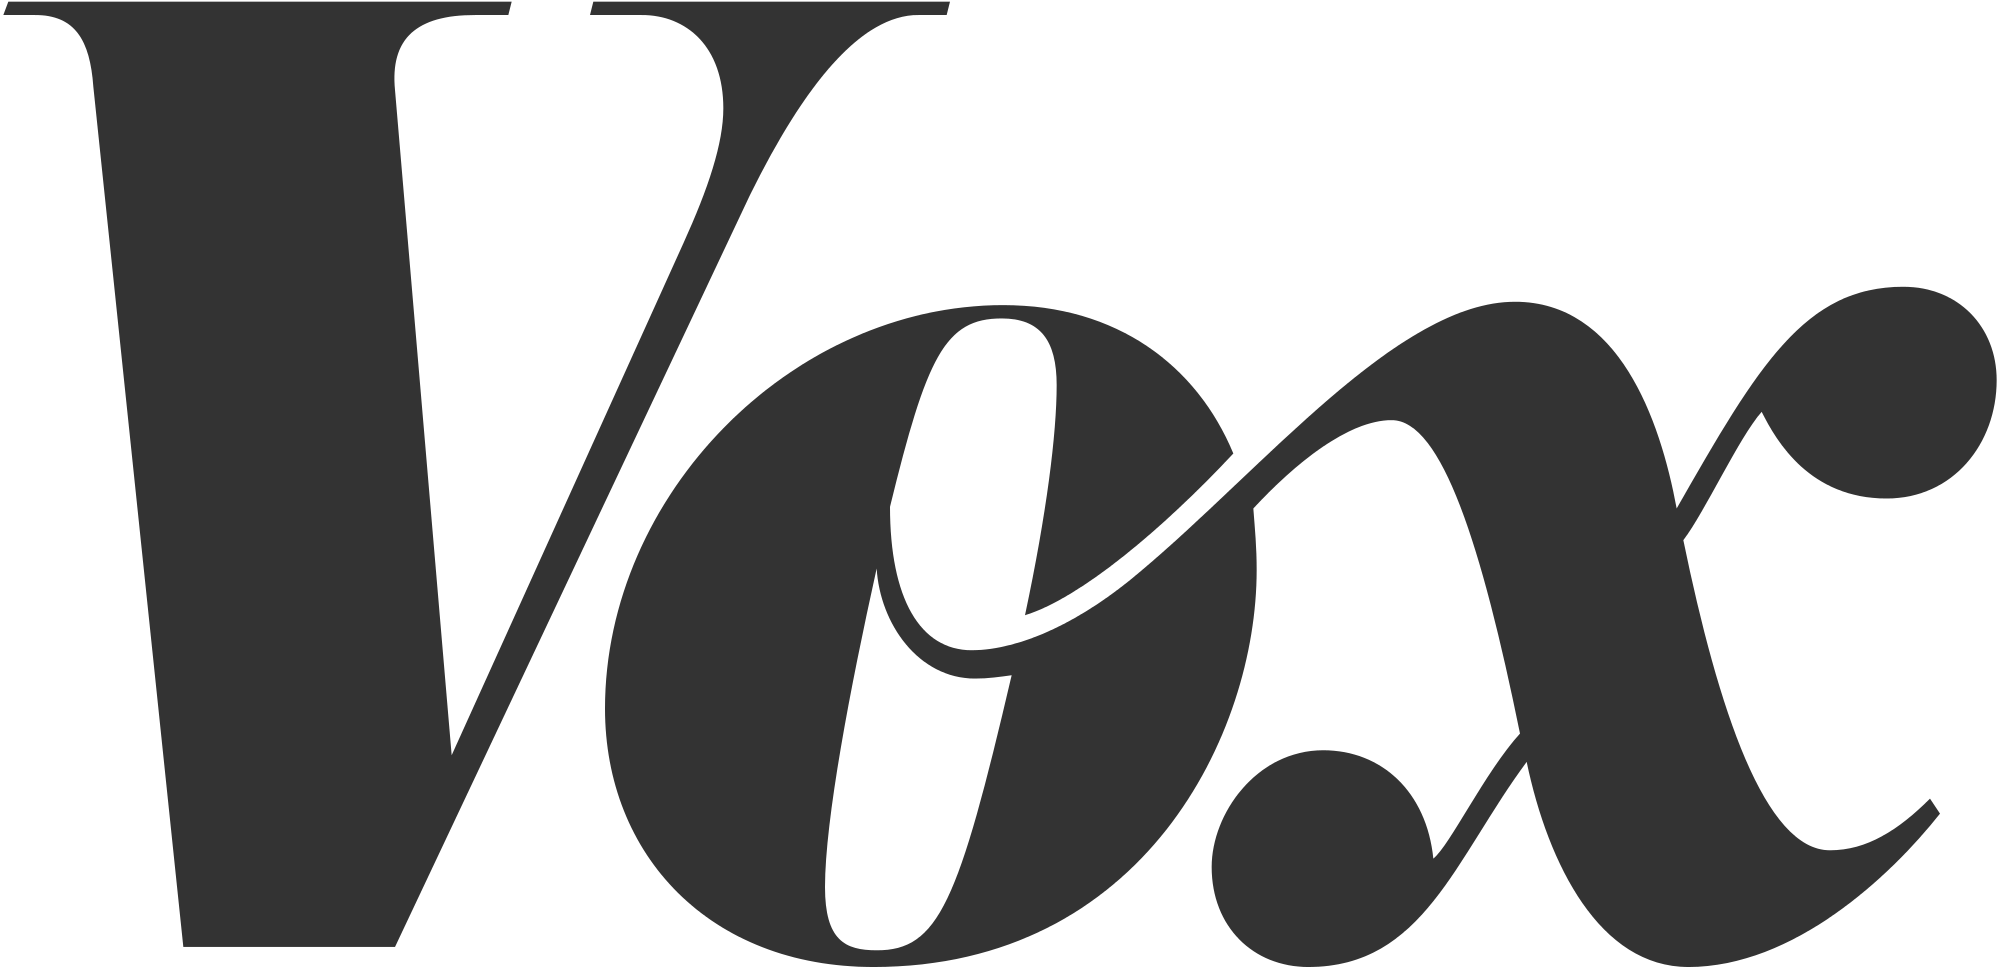 tüpograafia – mis kategooria font on Voxi logo? - Graafiline disain ...